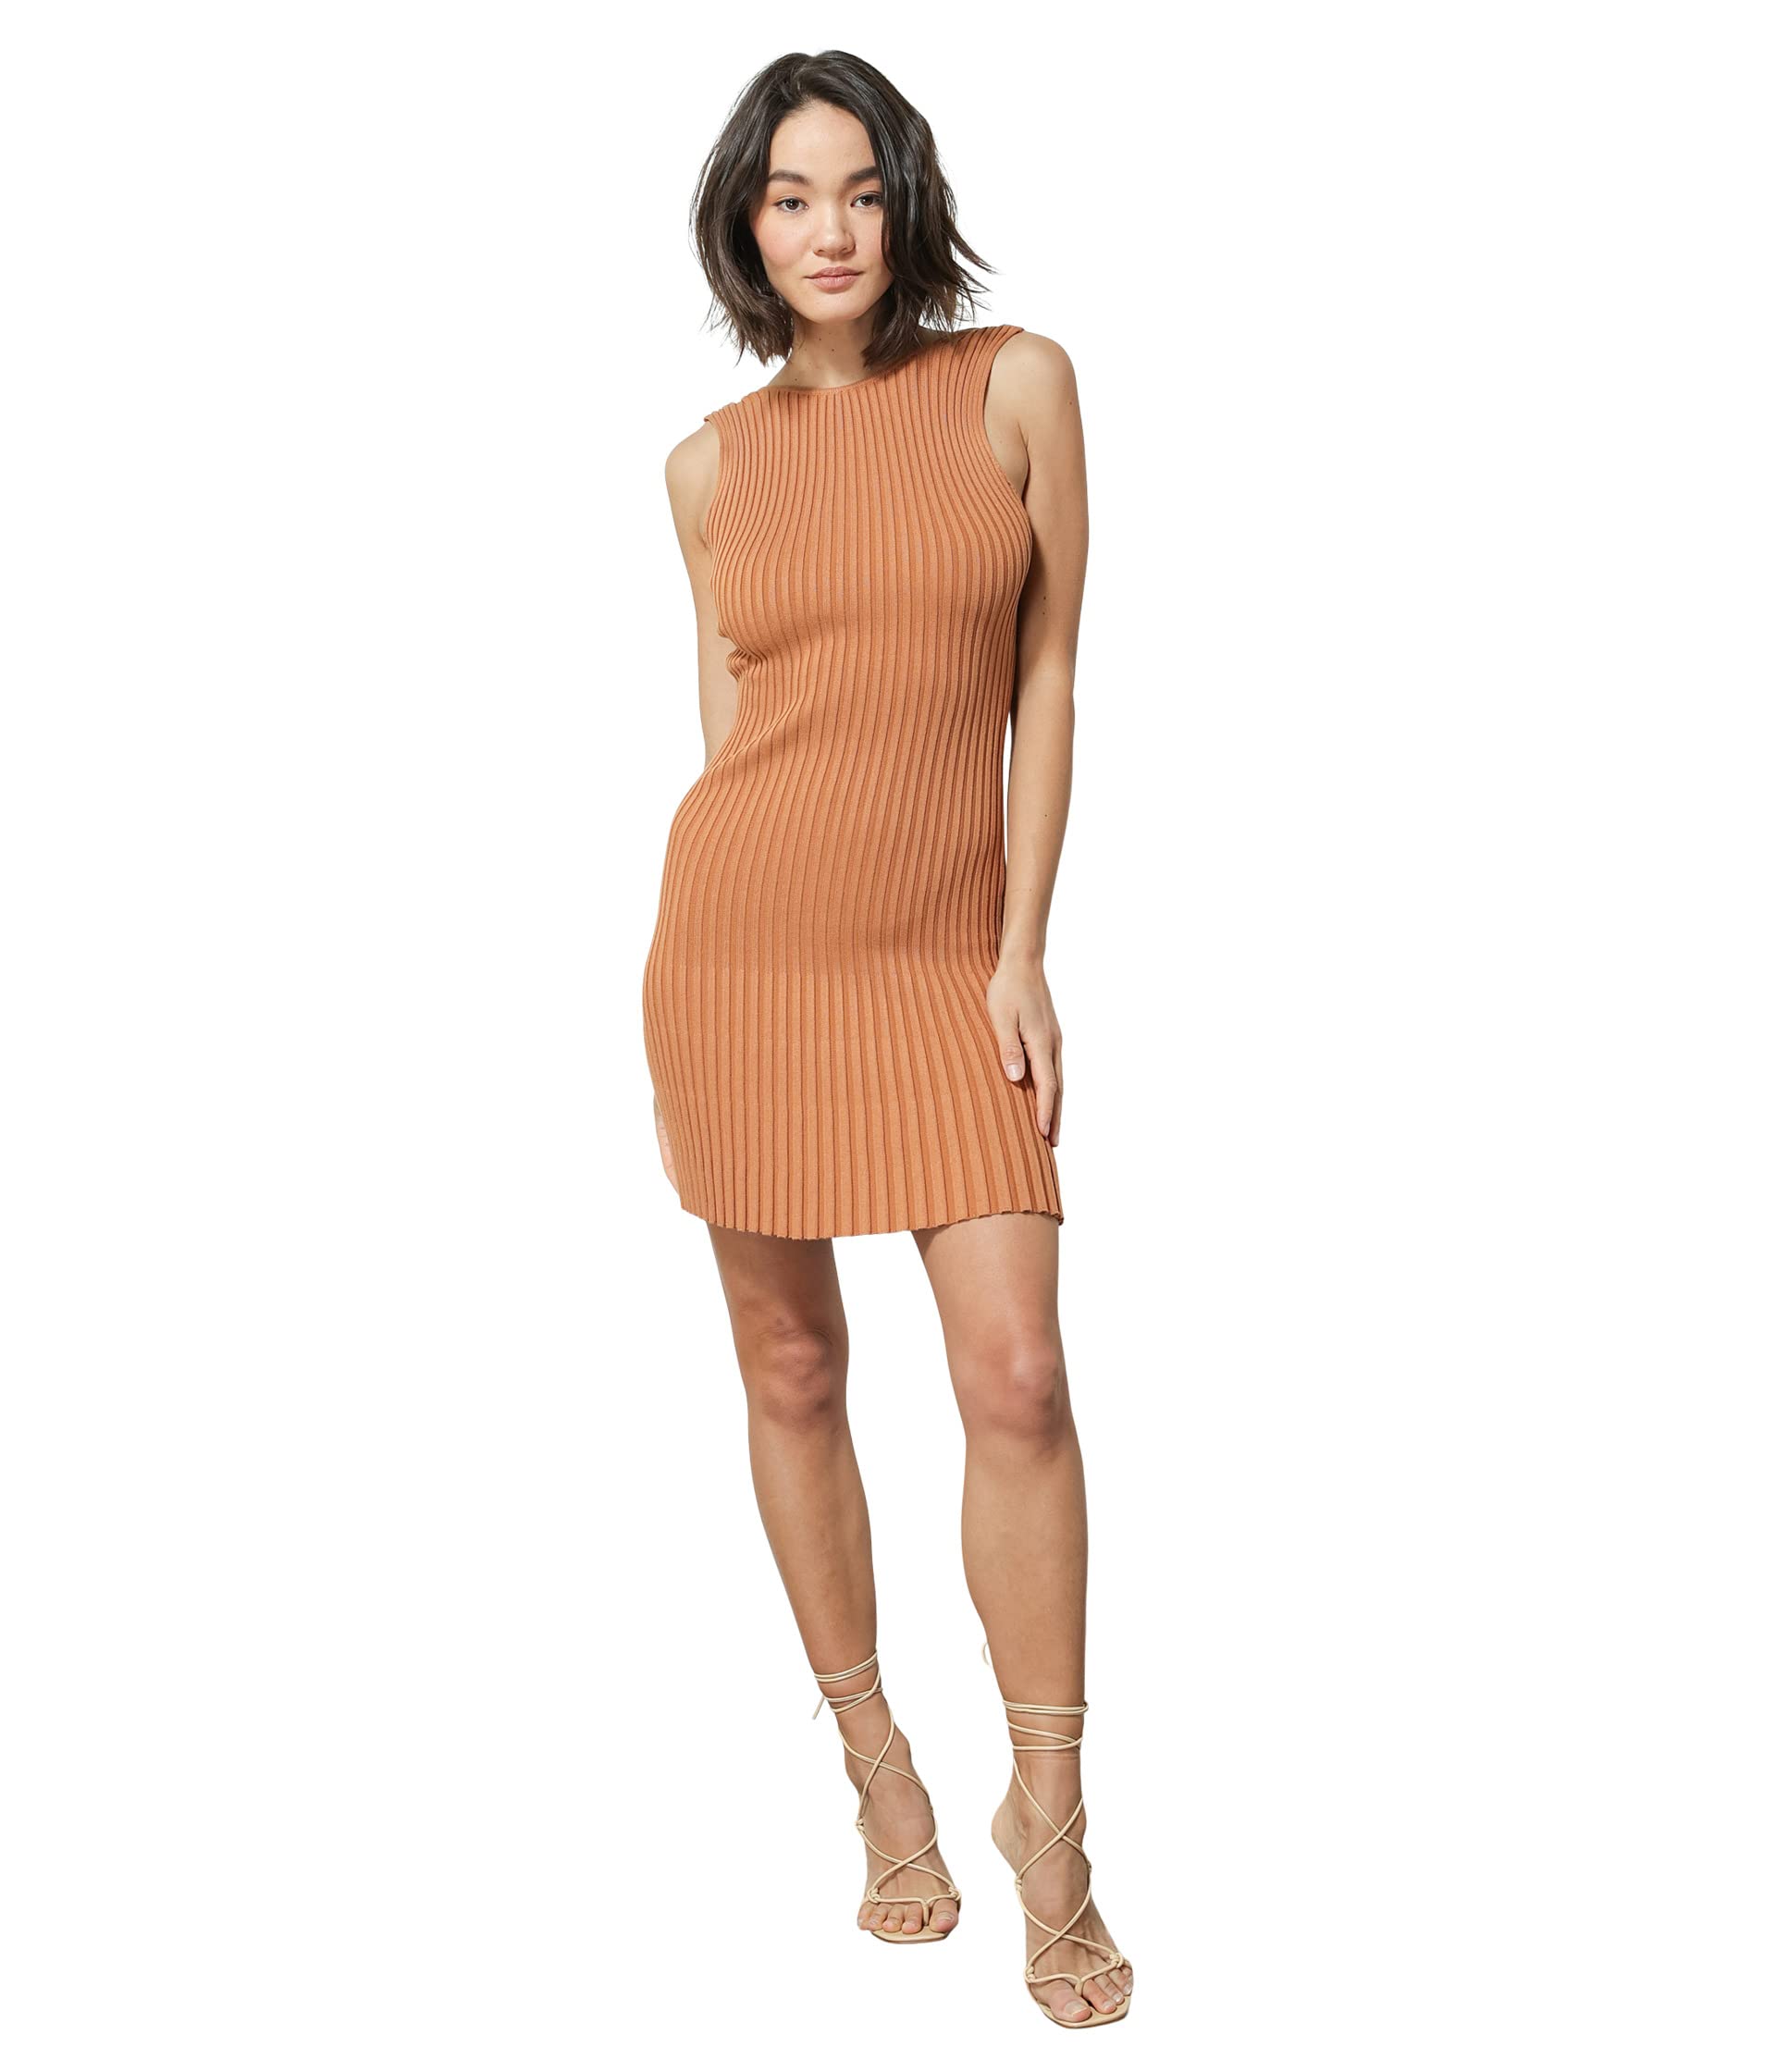 Платье line and dot, Mia Sweater Mini Dress